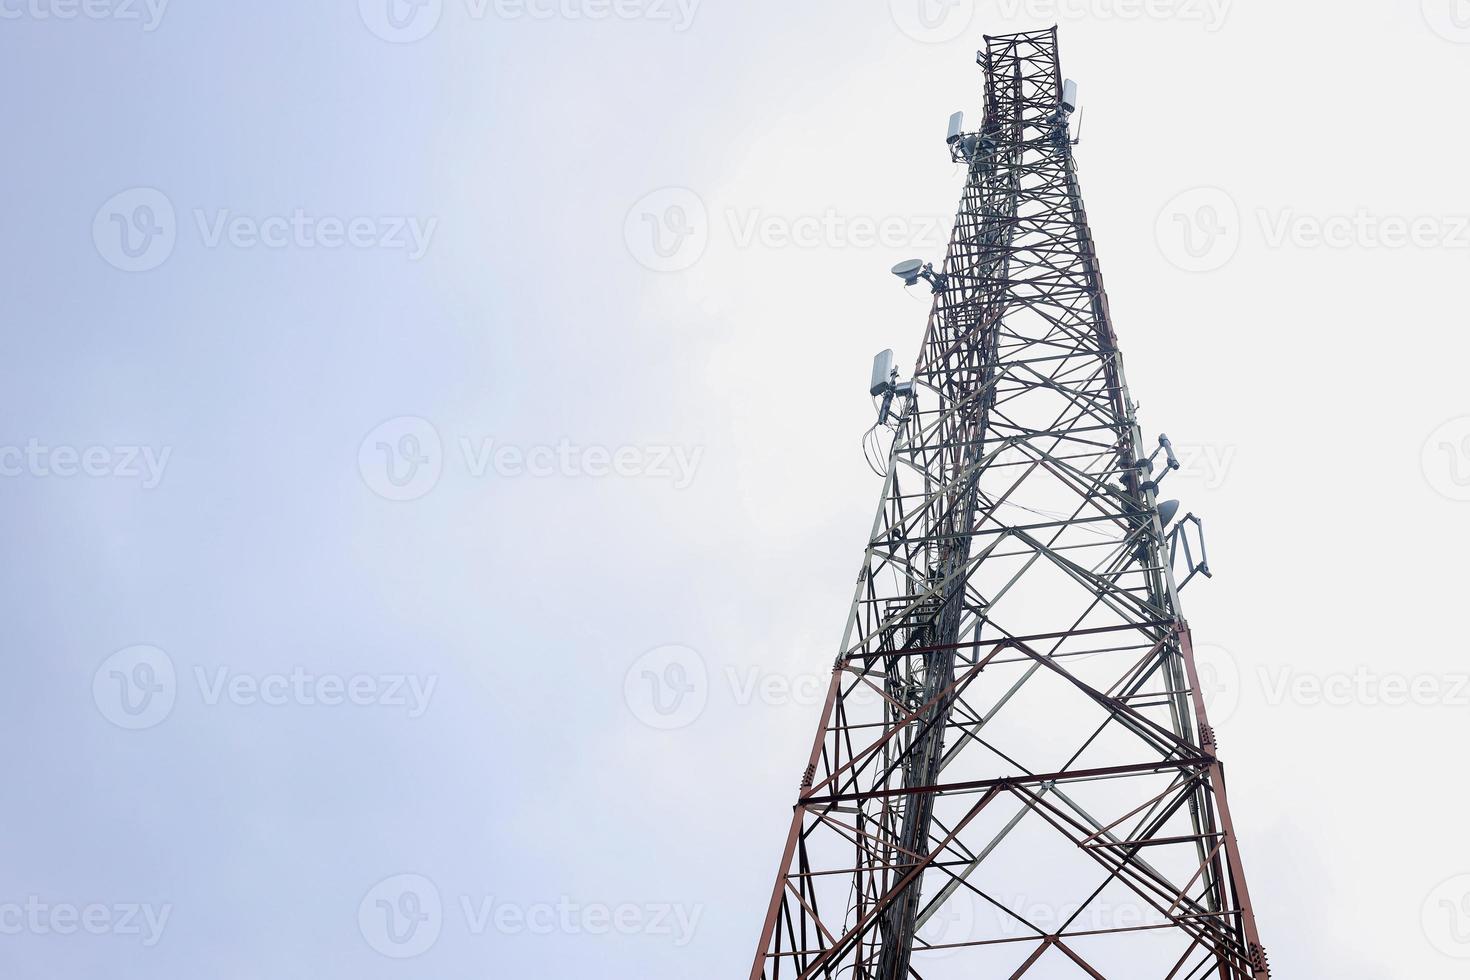 torre de satélite isolada no céu azul da nuvem branca. torre de transmissão de sinais de telefonia e televisão. torre de comunicação de rádio. foto